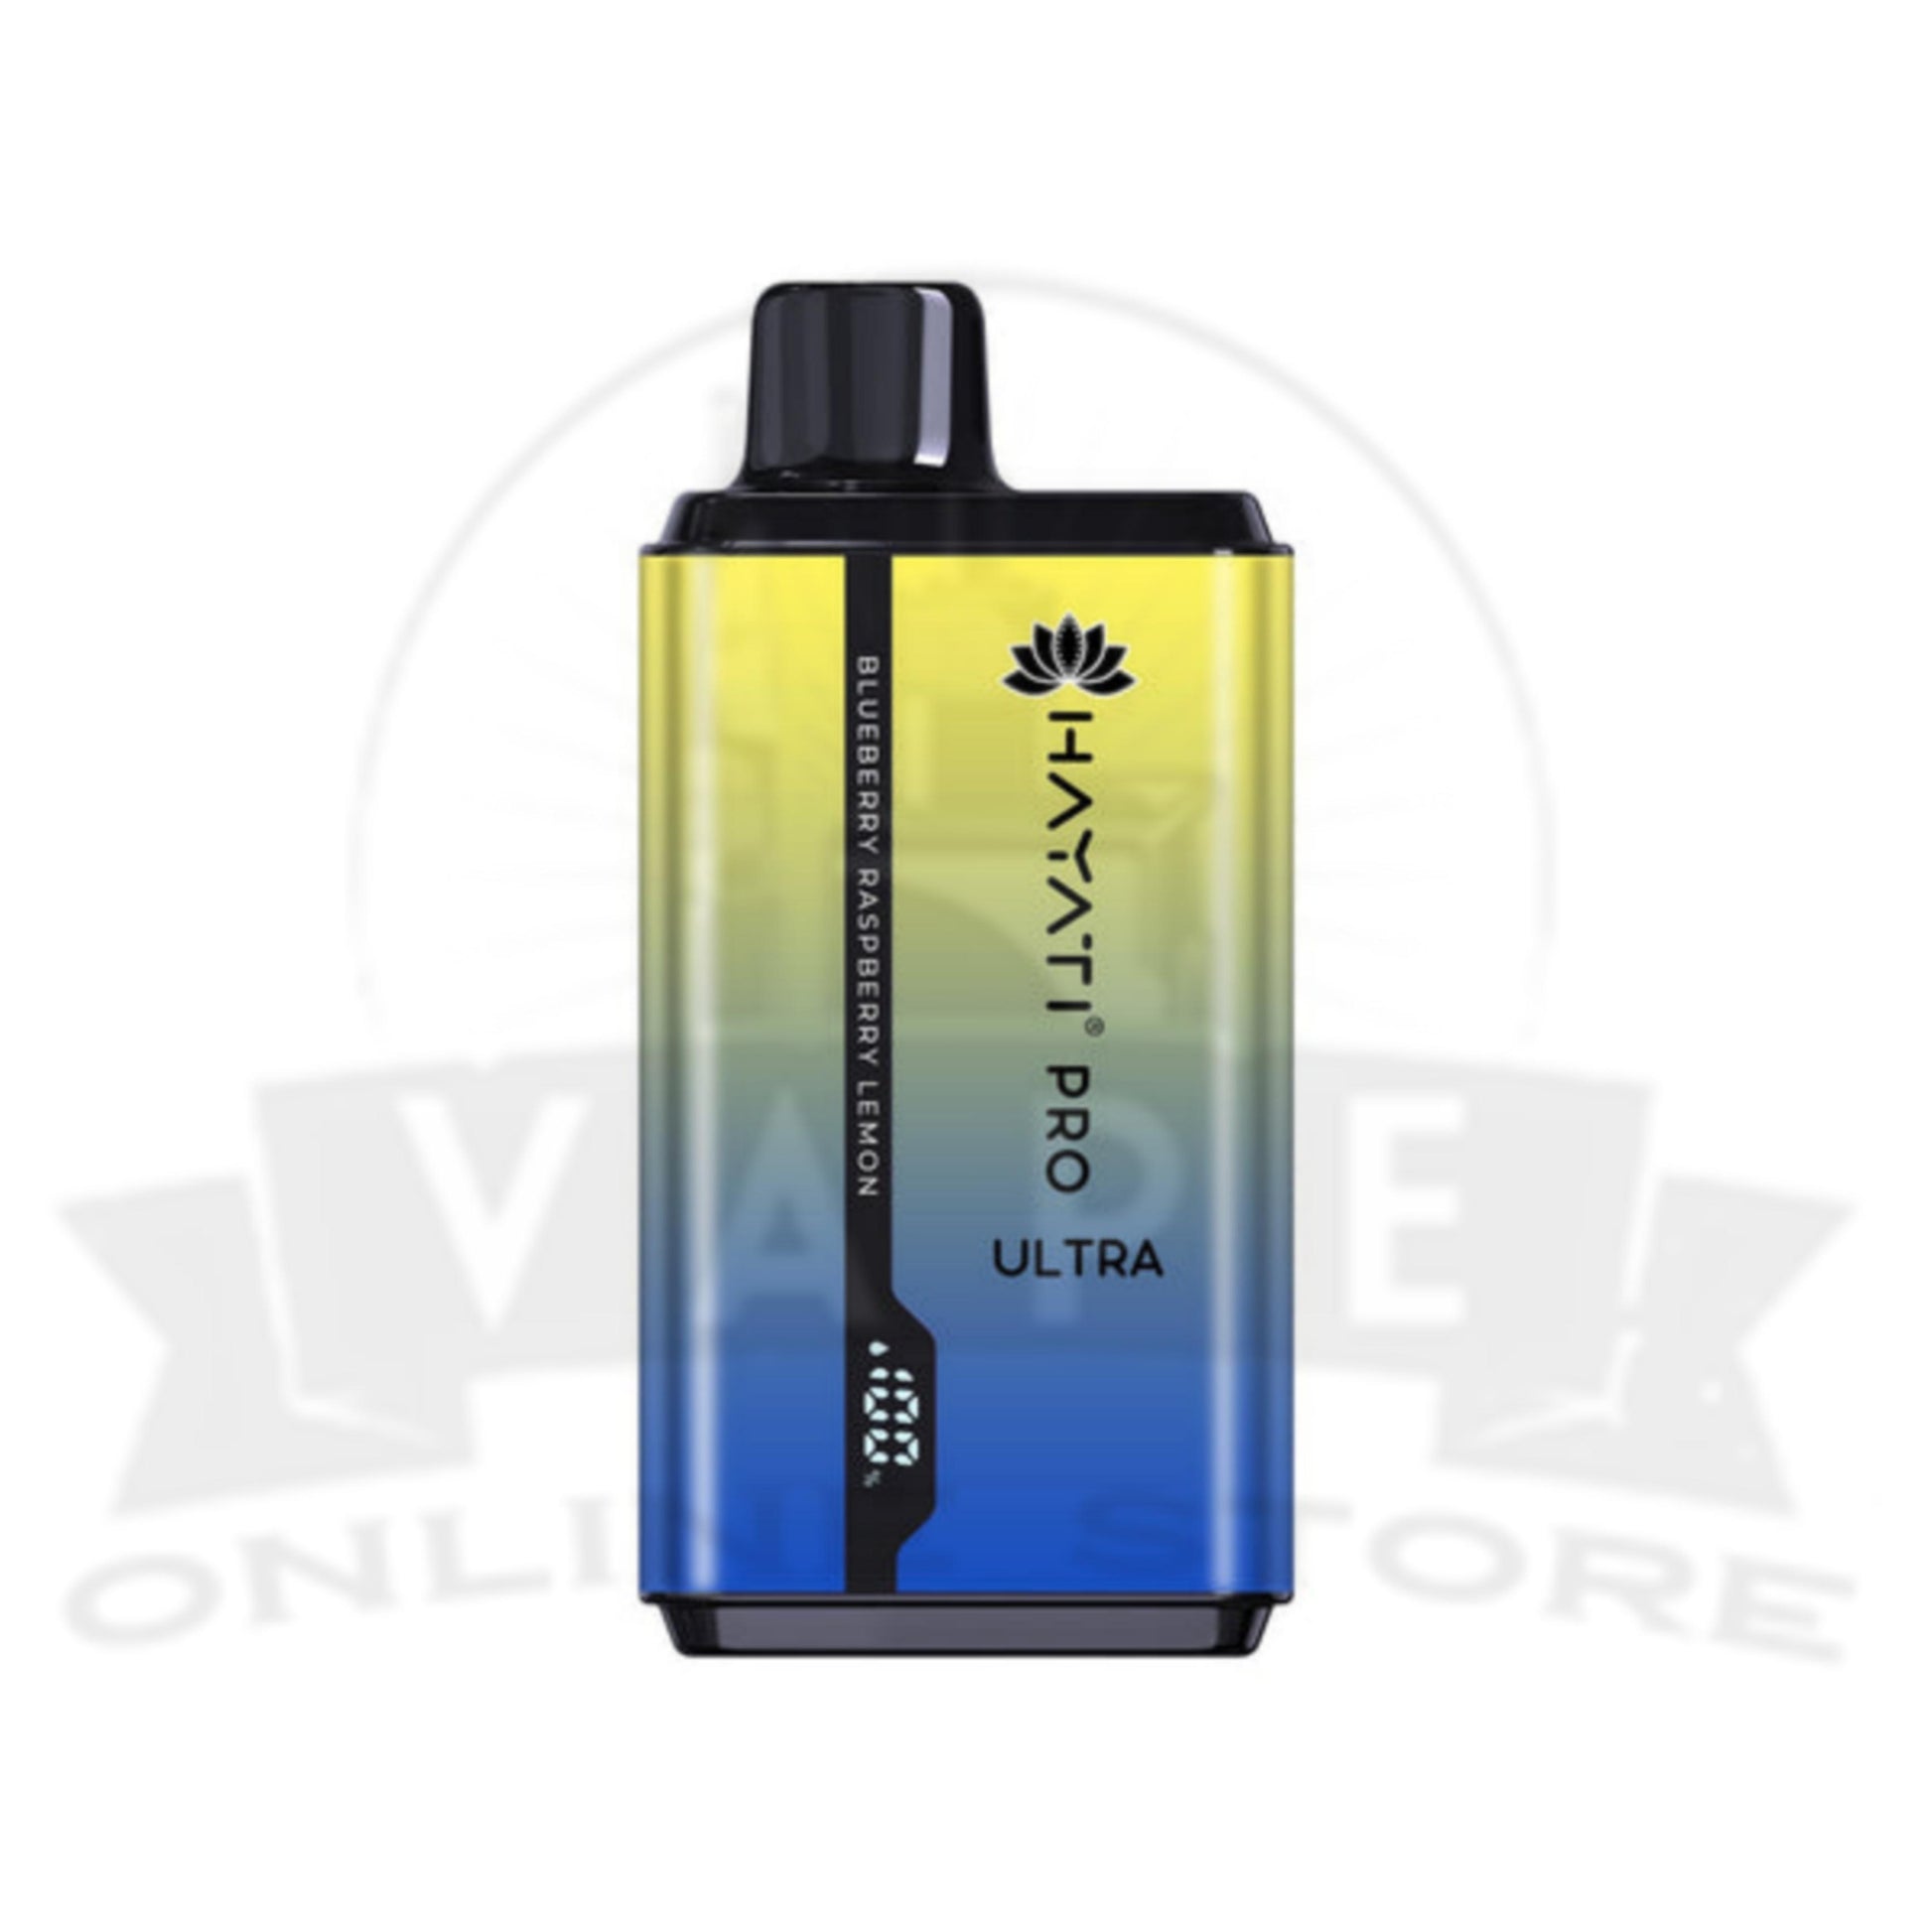 Blueberry Raspberry Lemon Hayati Pro Ultra 15000 Puffs Disposable Vape